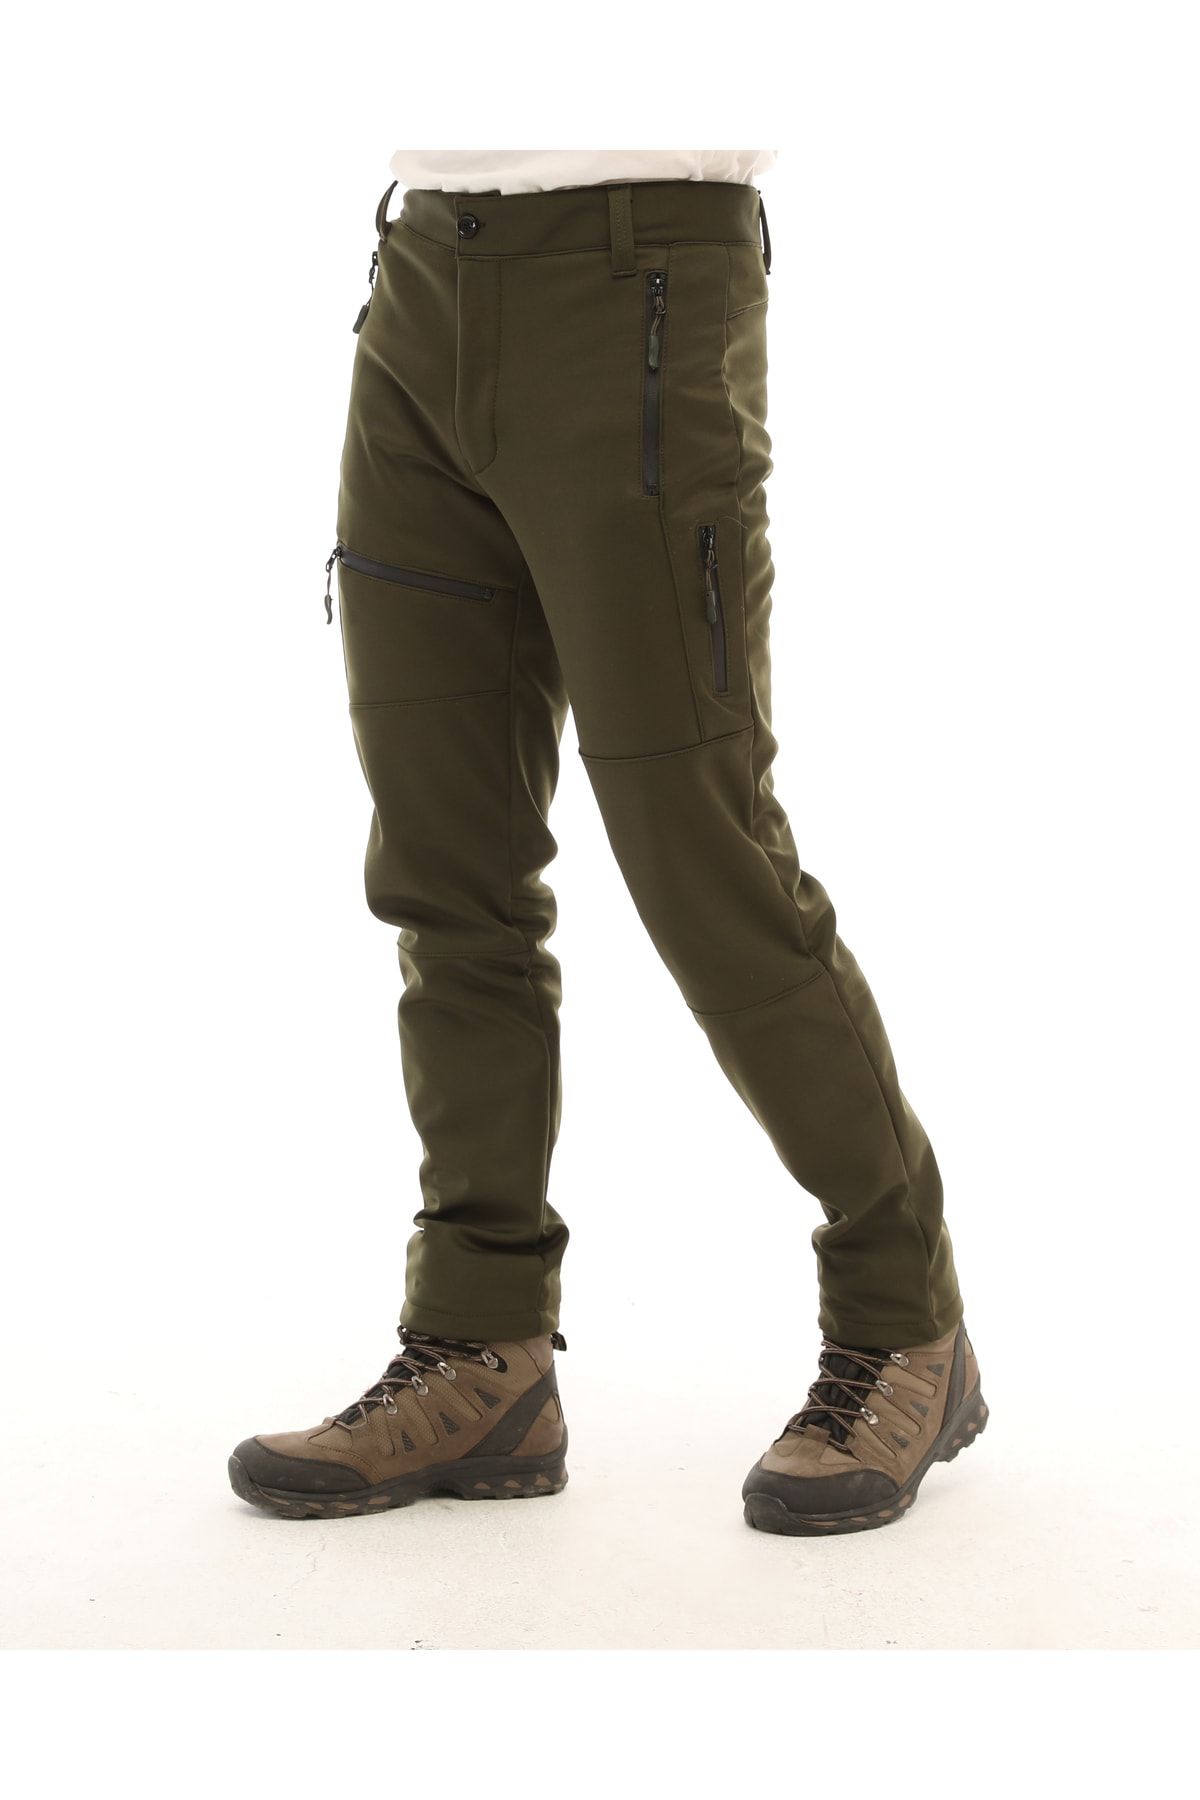 Ghassy Co Erkek Içi Polarlı Tactical Outdoor Su Geçirmez Koyu Haki Softshell Pantolon